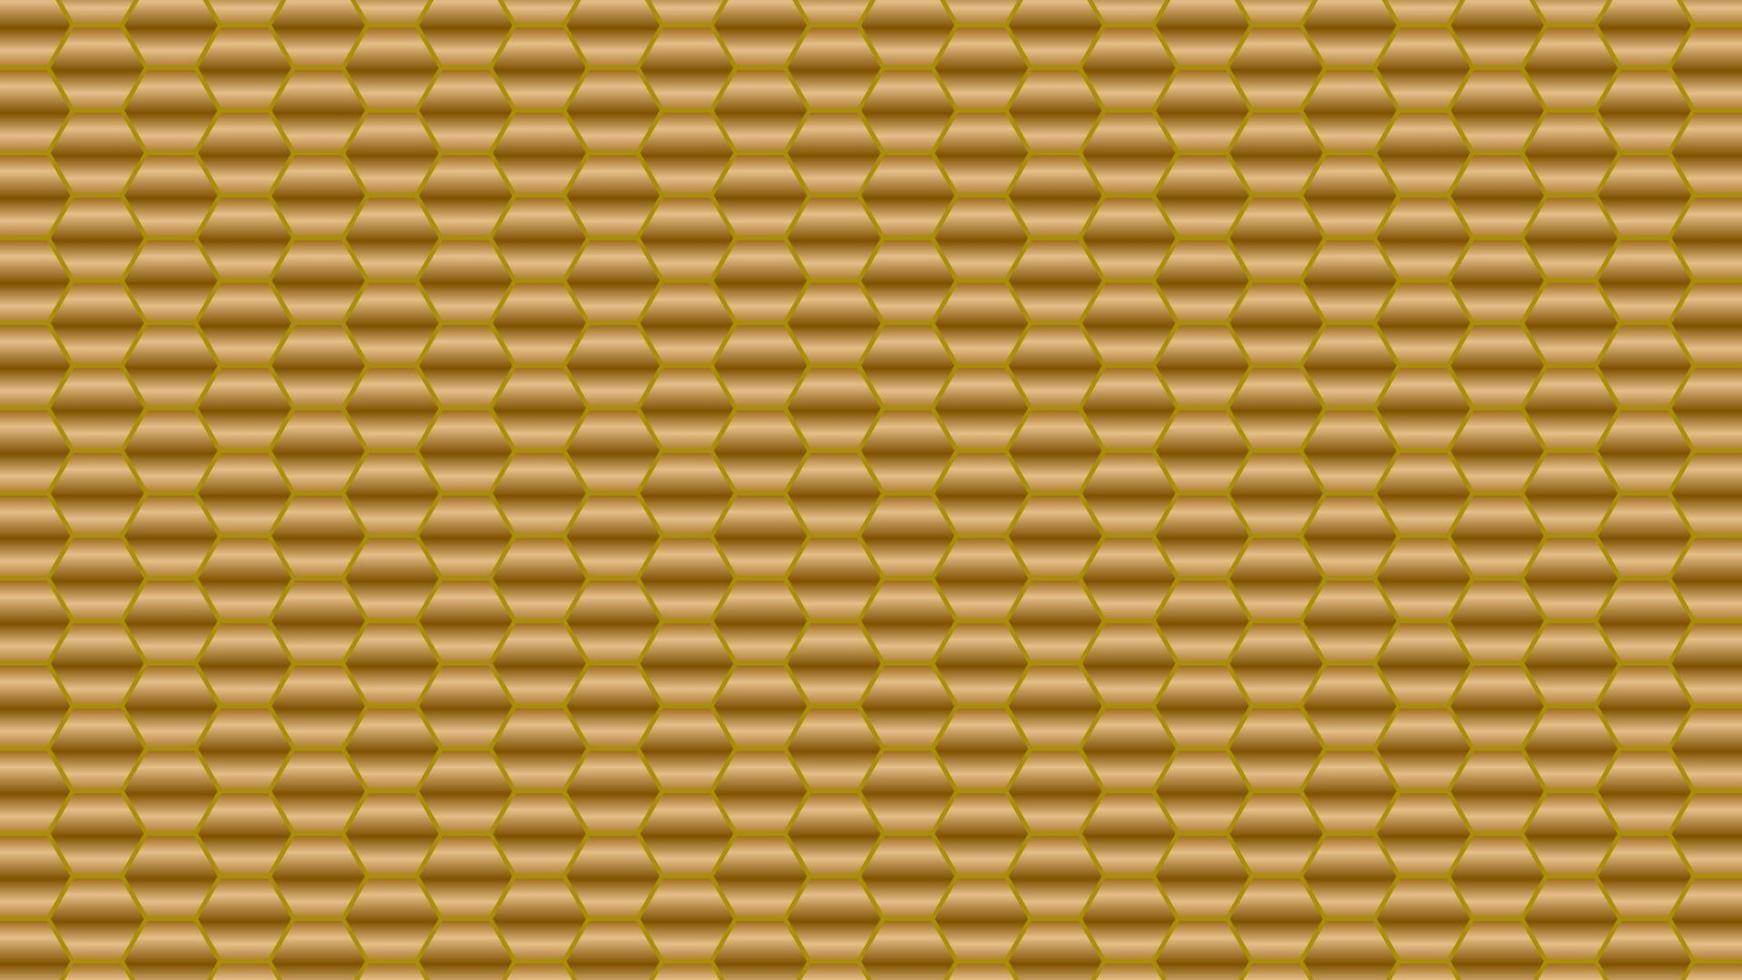 Fondo de patrón de panal hexagonal dorado 3d vector